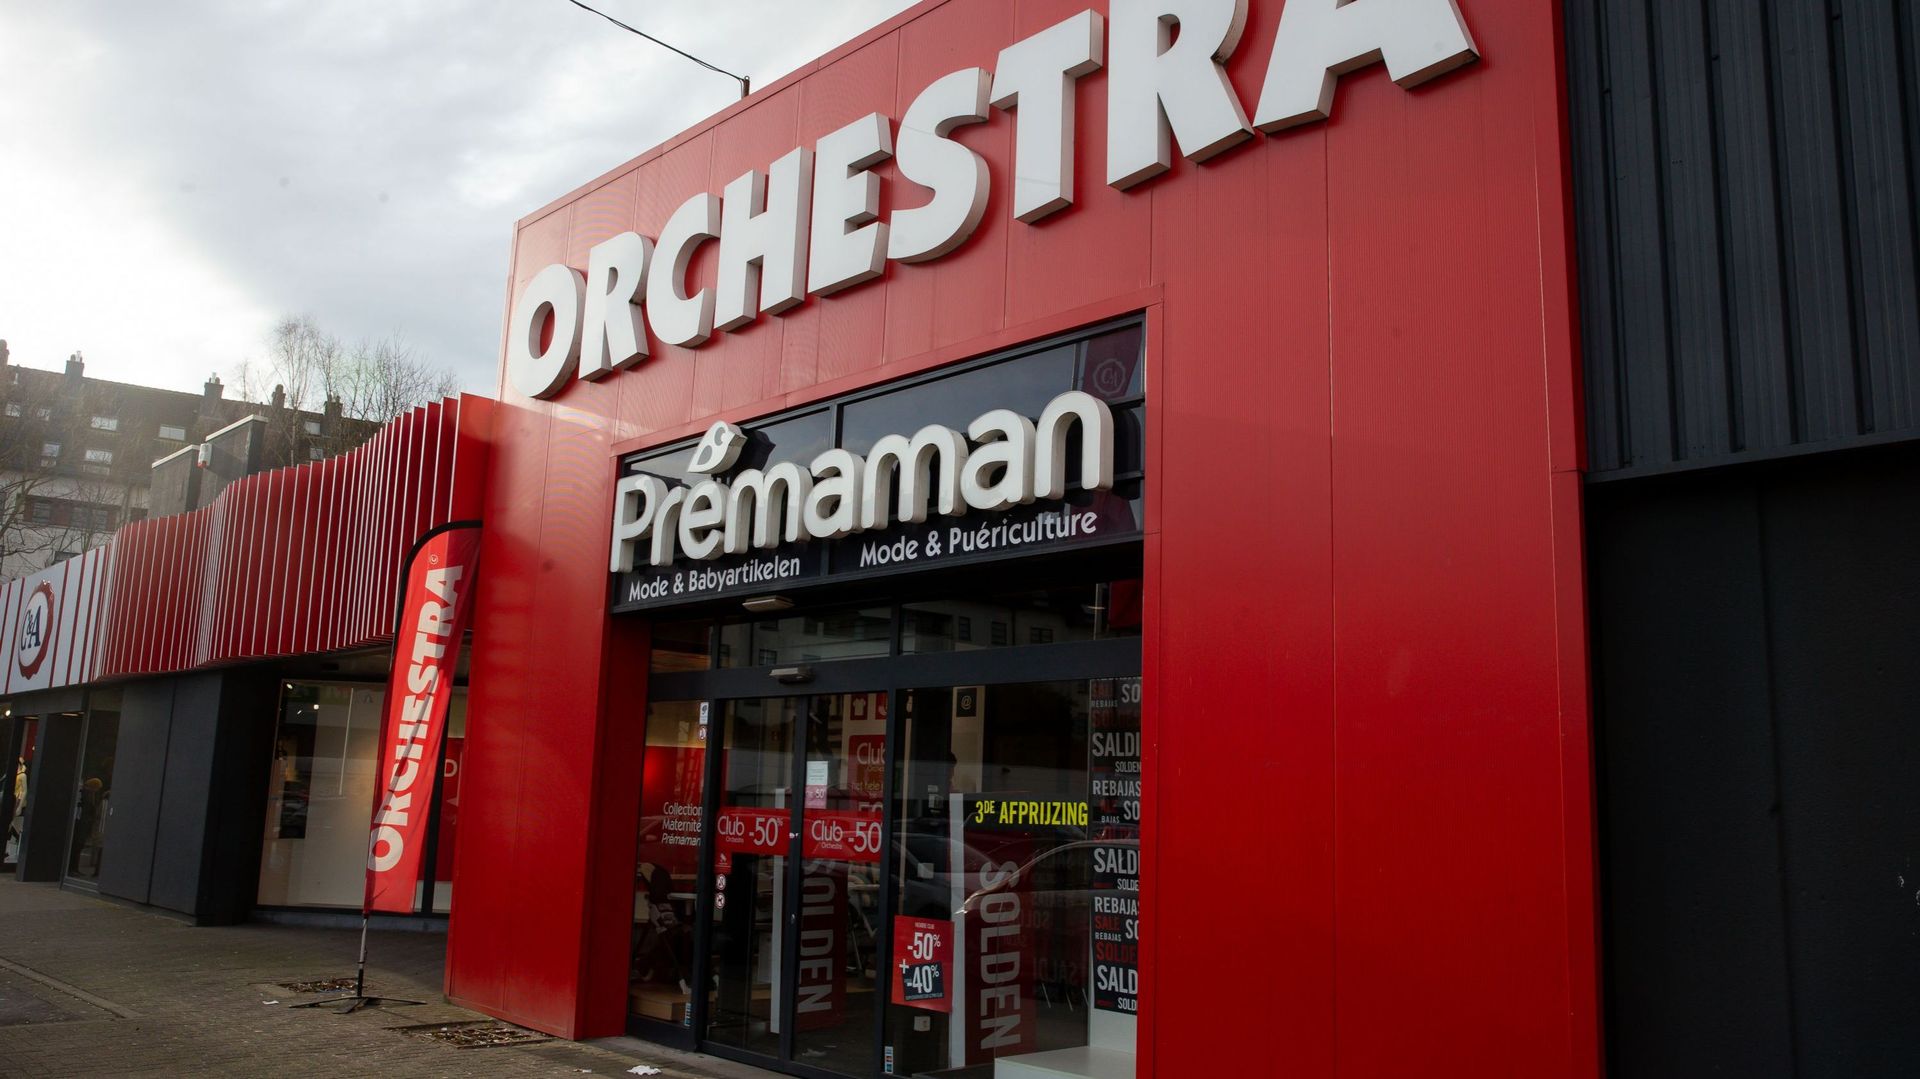 Quel avenir pour les magasins Orchestra ? "Encore beaucoup d'inconnues", selon la CNE